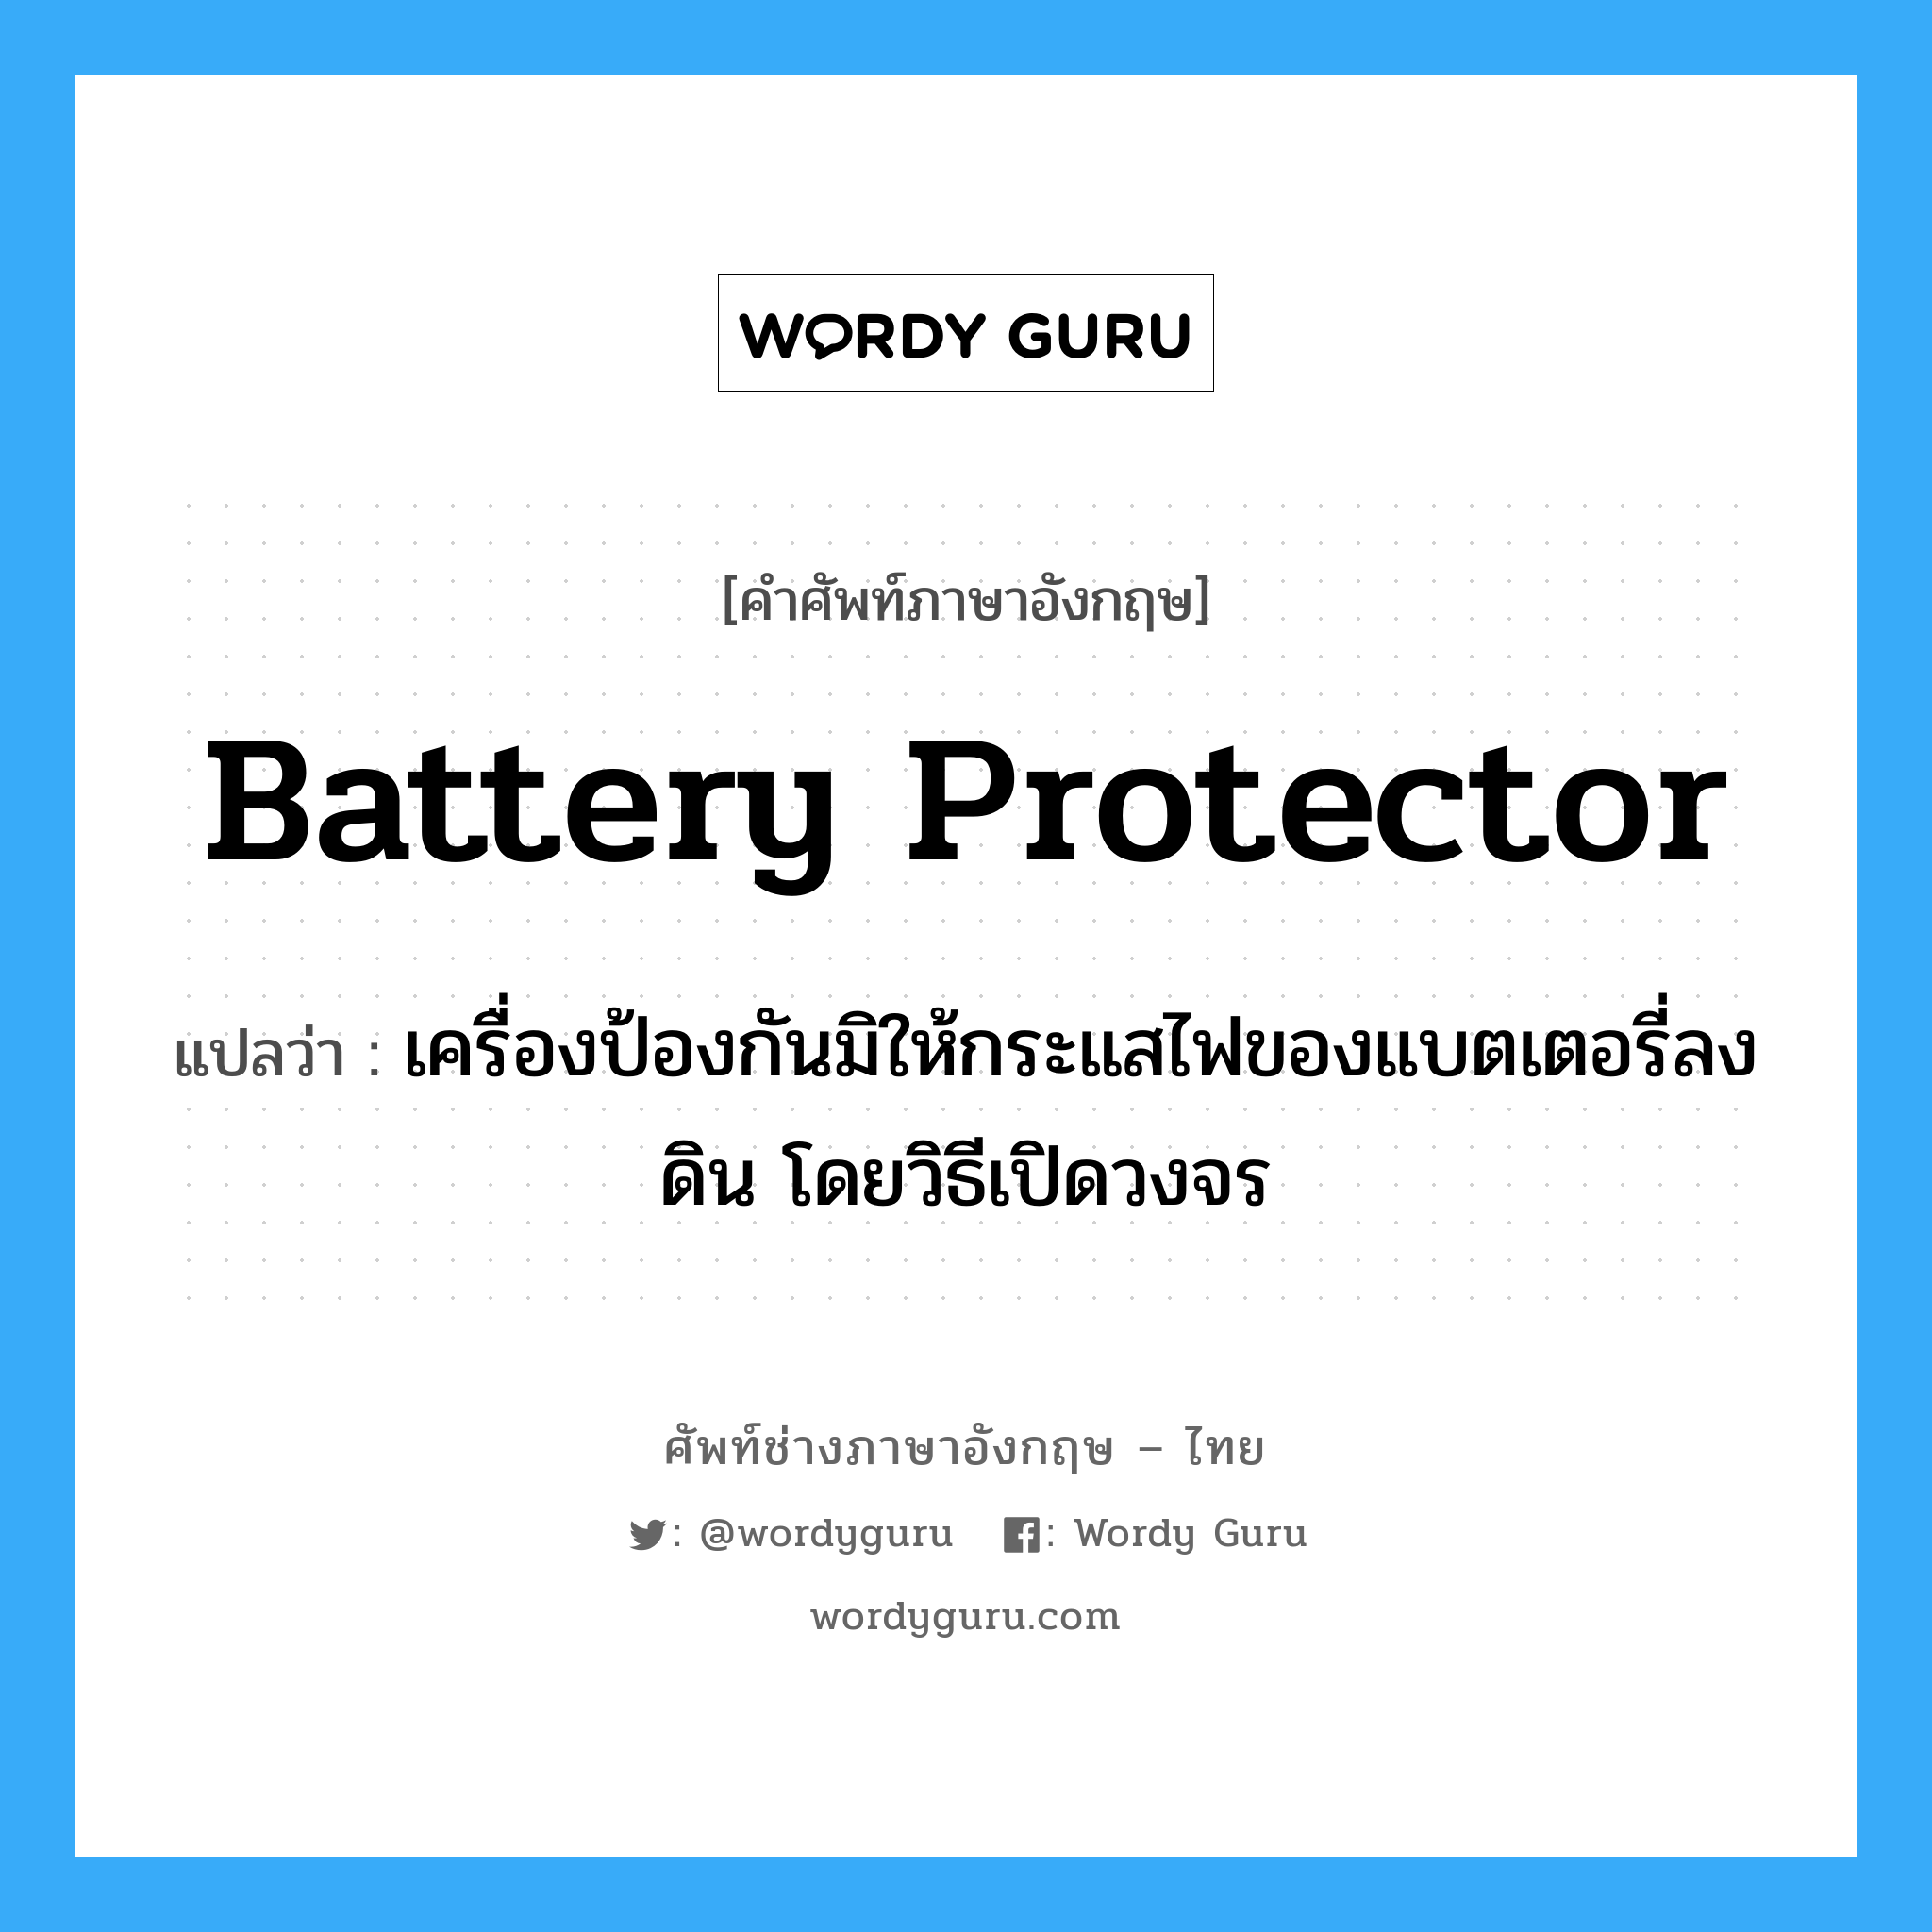 battery protector แปลว่า?, คำศัพท์ช่างภาษาอังกฤษ - ไทย battery protector คำศัพท์ภาษาอังกฤษ battery protector แปลว่า เครื่องป้องกันมิให้กระแสไฟของแบตเตอรี่ลงดิน โดยวิธีเปิดวงจร